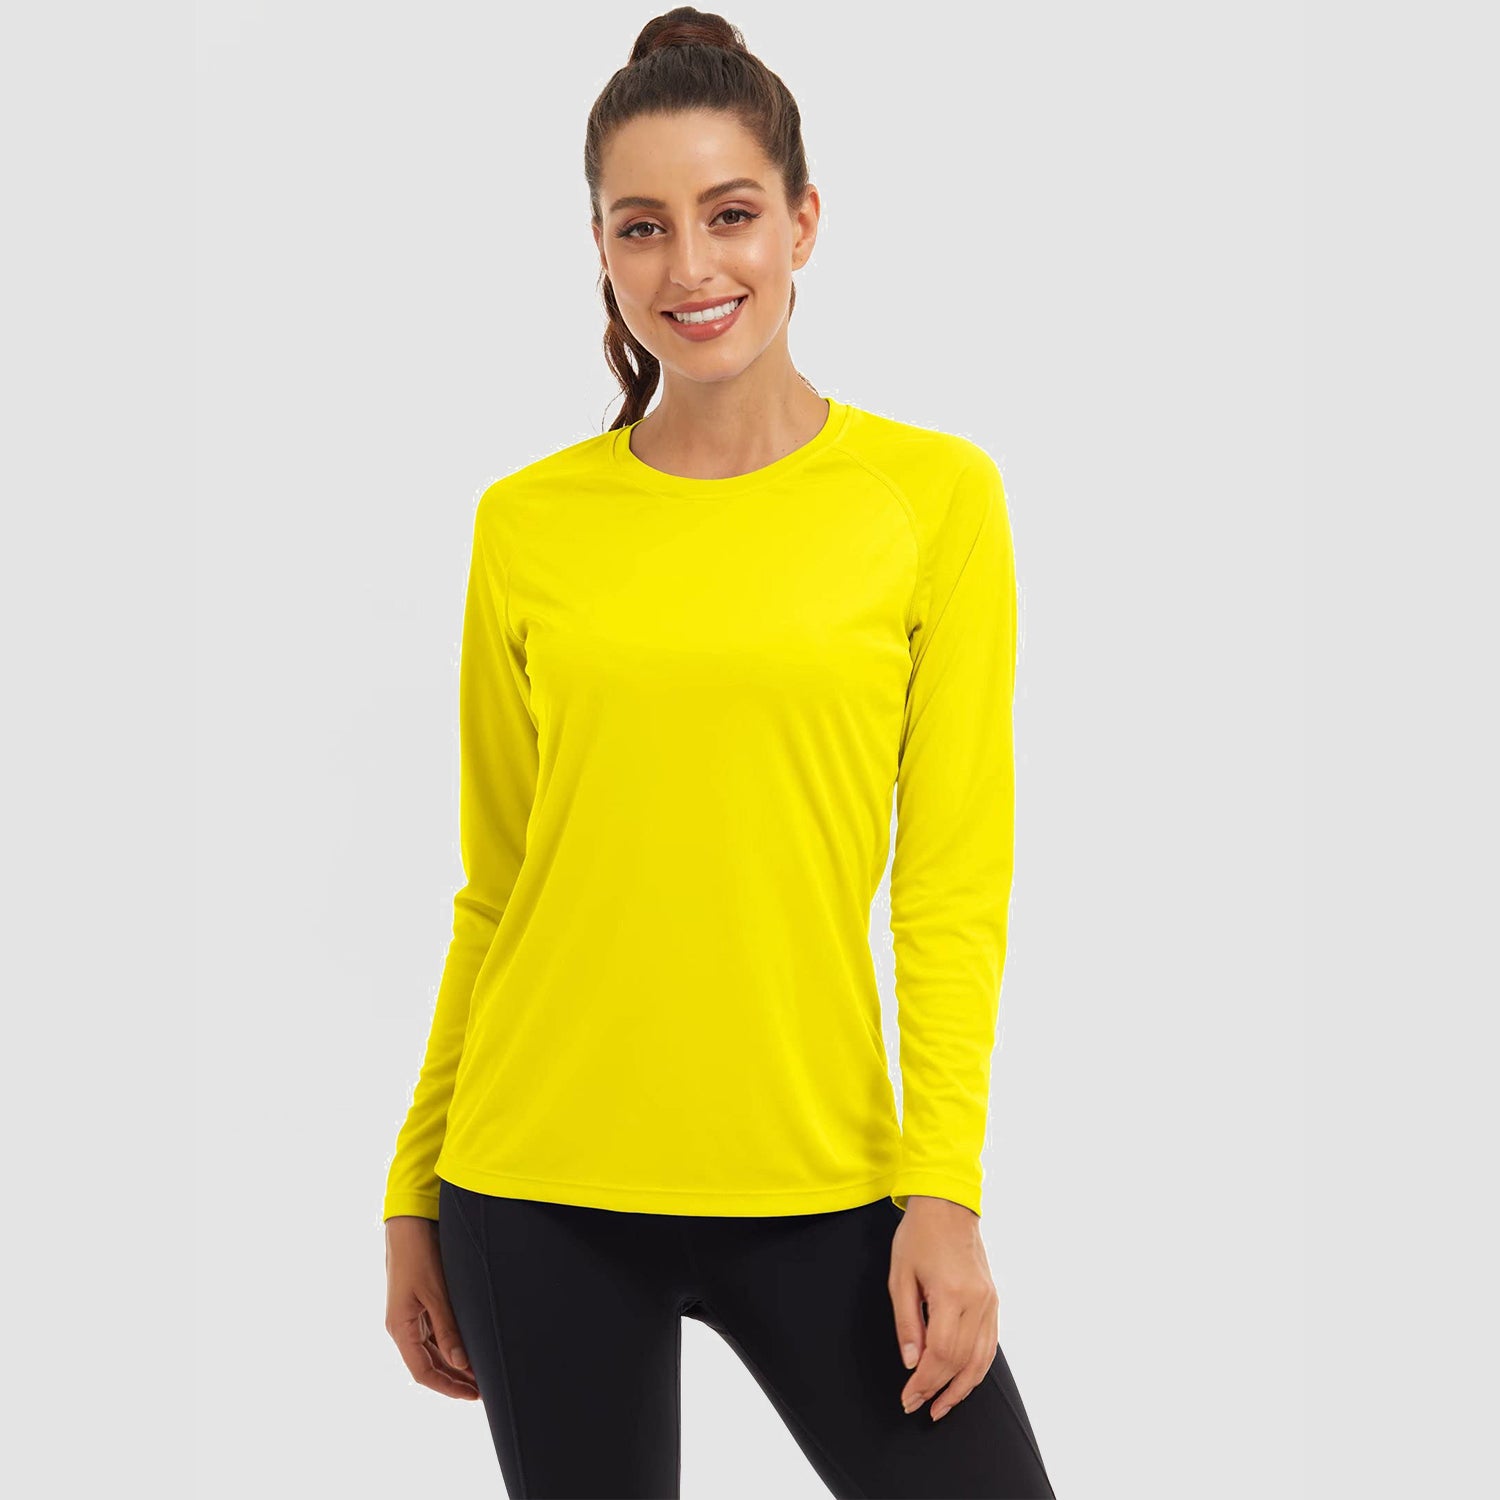 Women's Long Sleeve Shirts UPF 50+ Sun Protection Shirts for Hiking Fishing Workout Rash Guard, Yellow / L